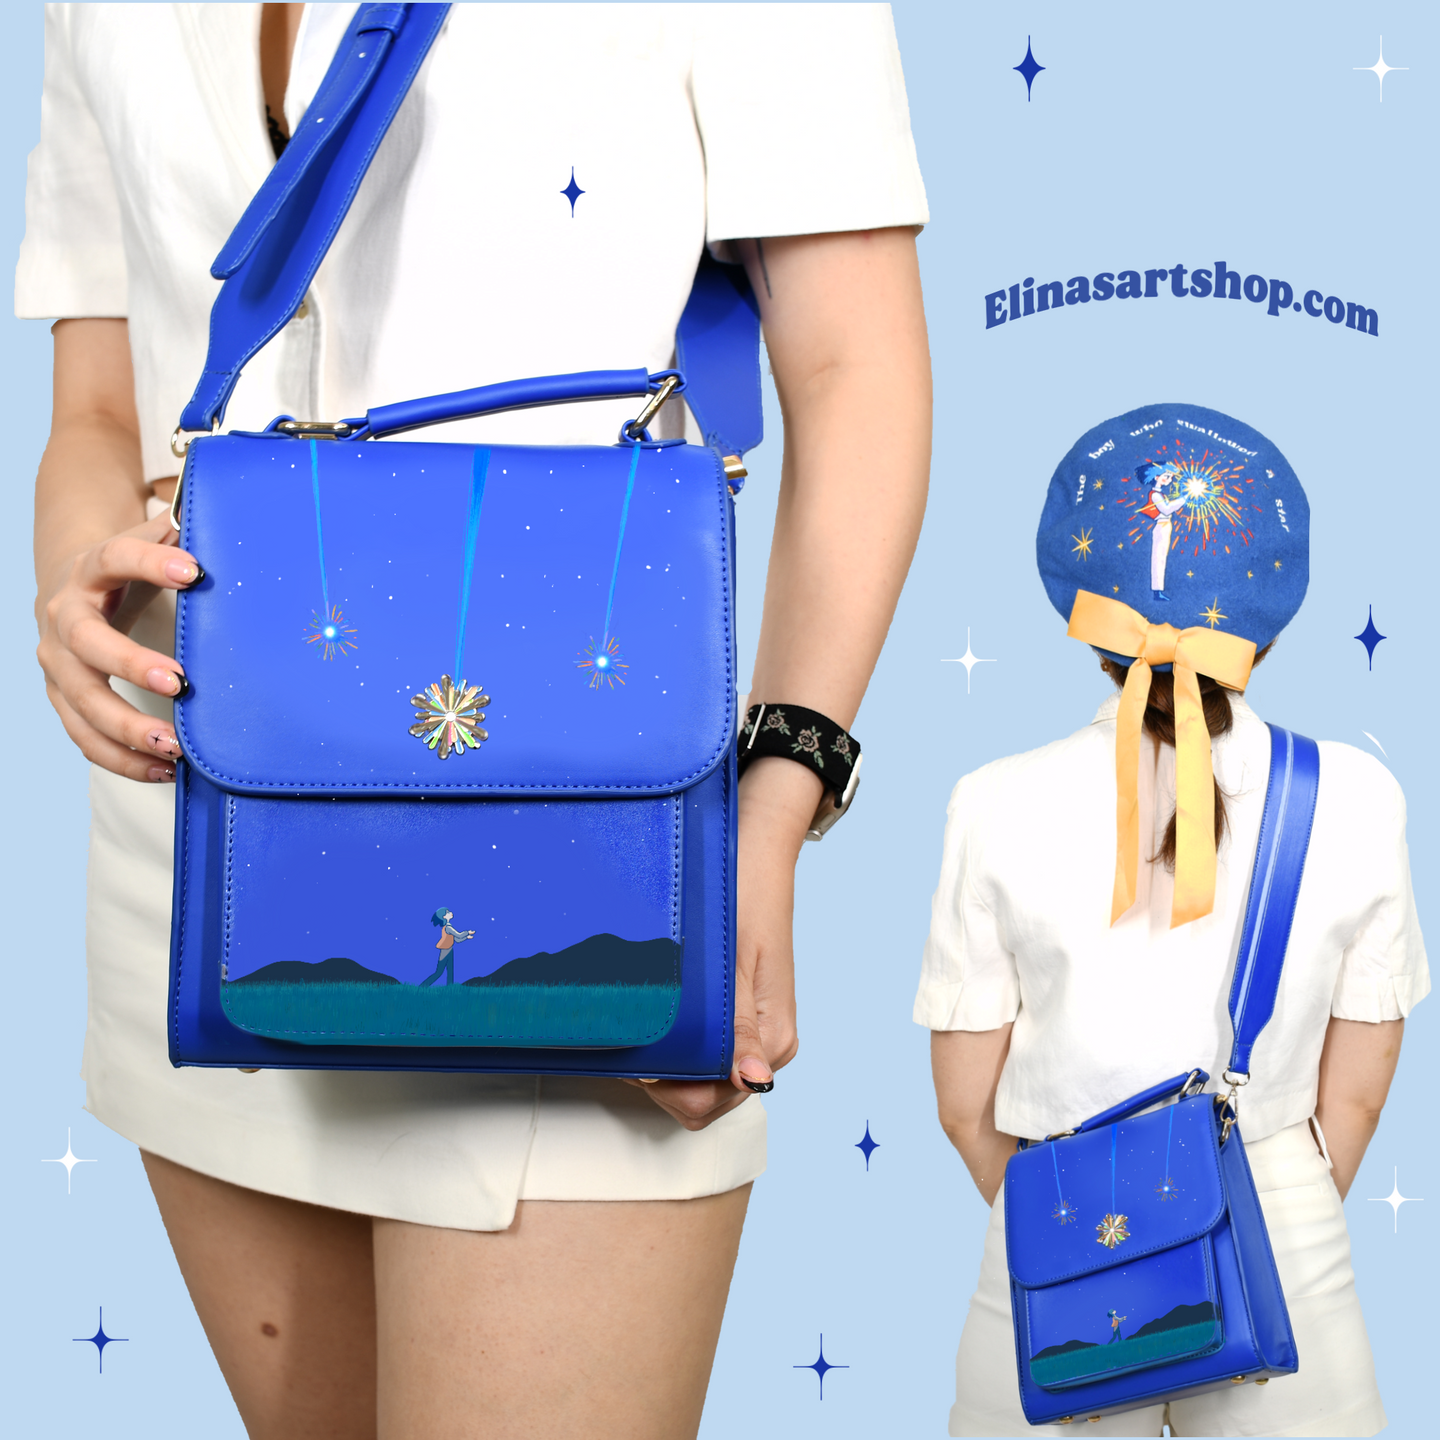 Magician stars bag